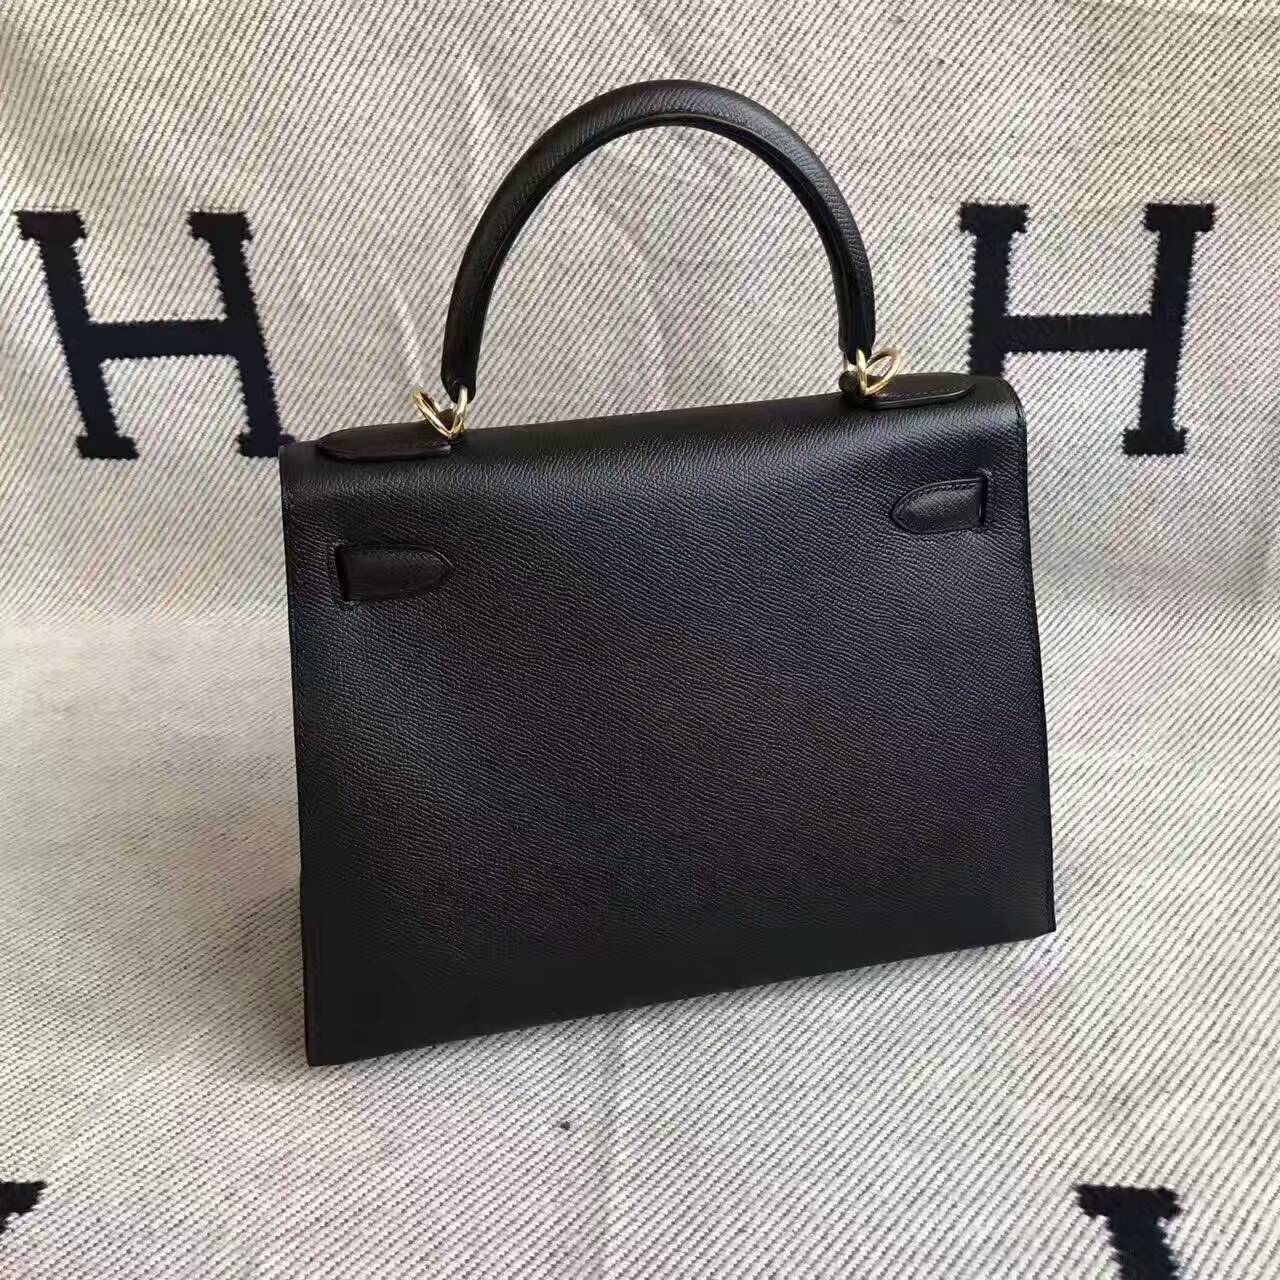 Luxury Hermes CK89 Black Epsom Leather Sellier Kelly Bag 28CM